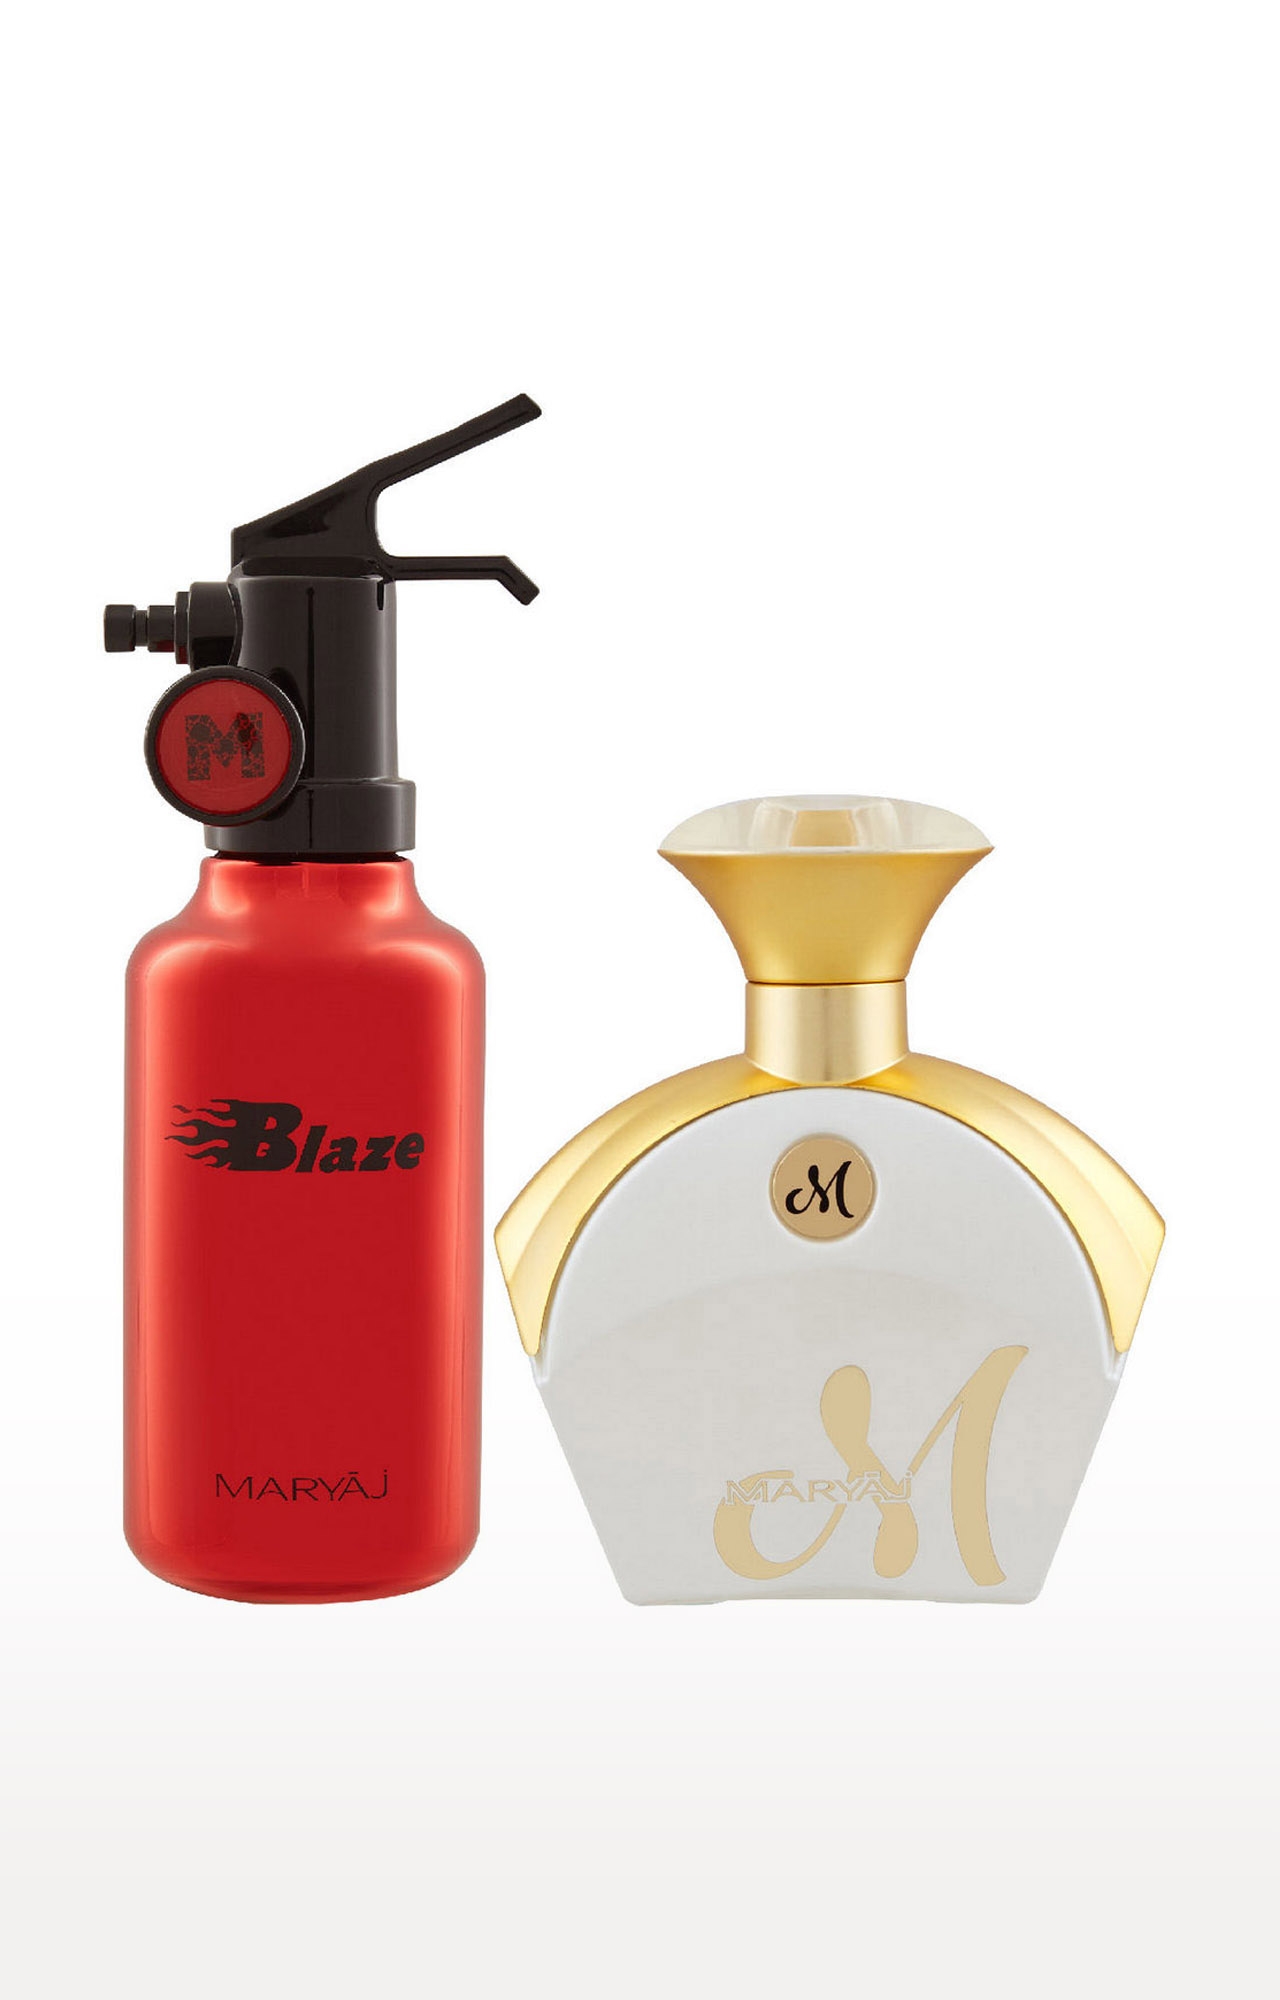 Maryaj | Maryaj Blaze Eau De Parfum Citrus Aromatic Perfume 100ml for Men and Maryaj M White for Her Eau De Parfum Floral Fruity Perfume 90ml for Women